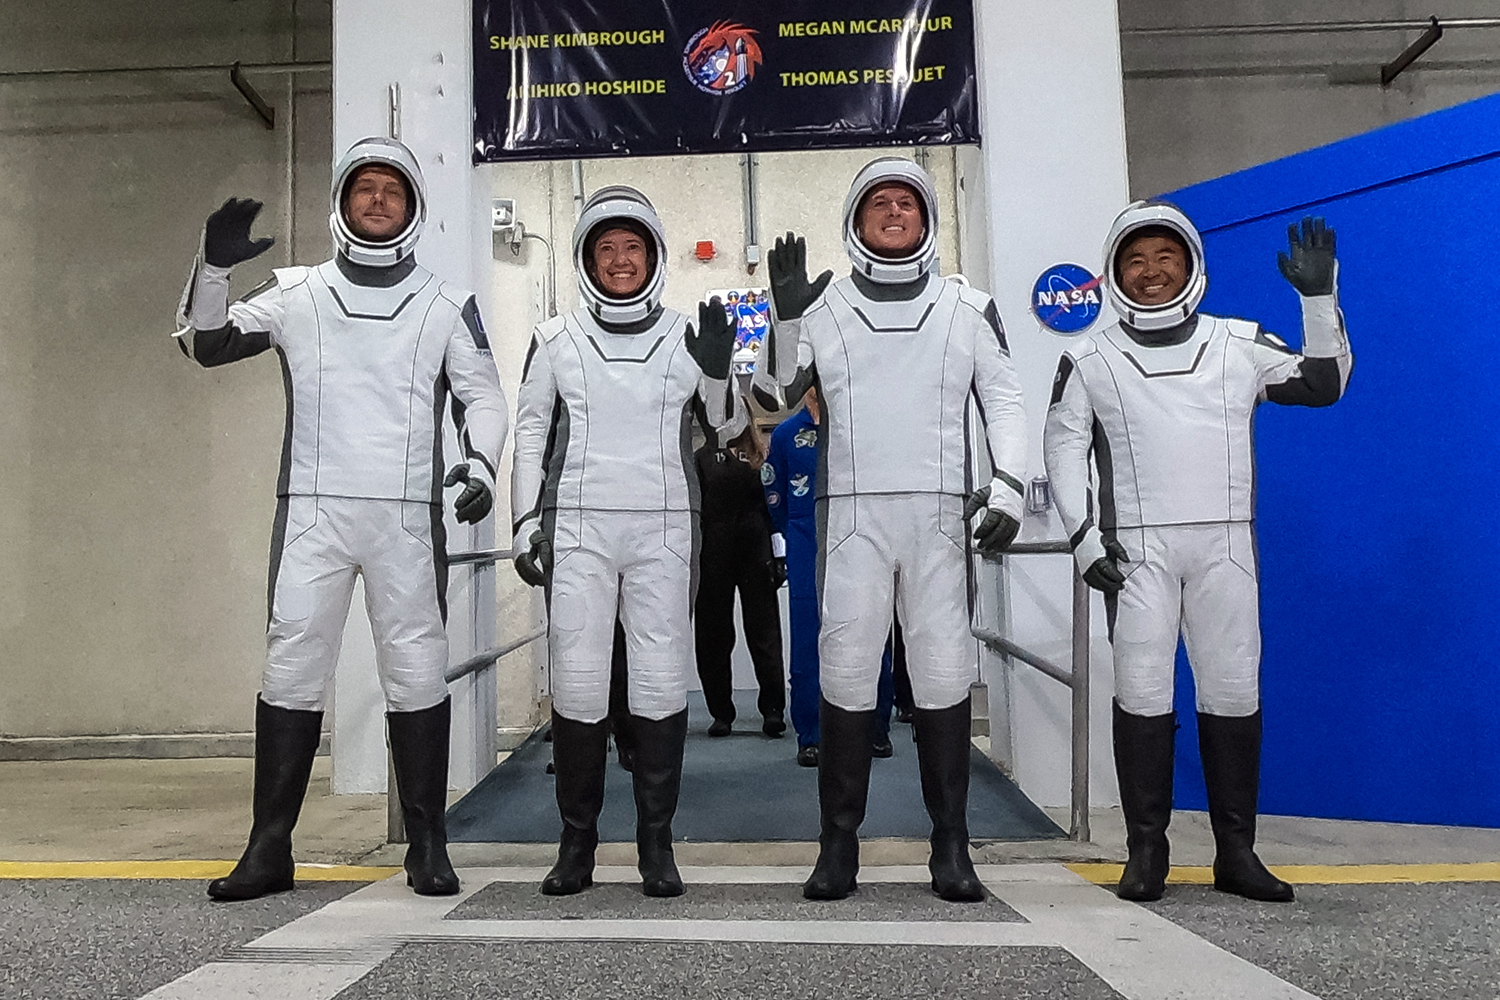 Los astronautas de la misión Crew-2 de la NASA y SpaceX antes de partir a la Estación Espacial Internacional